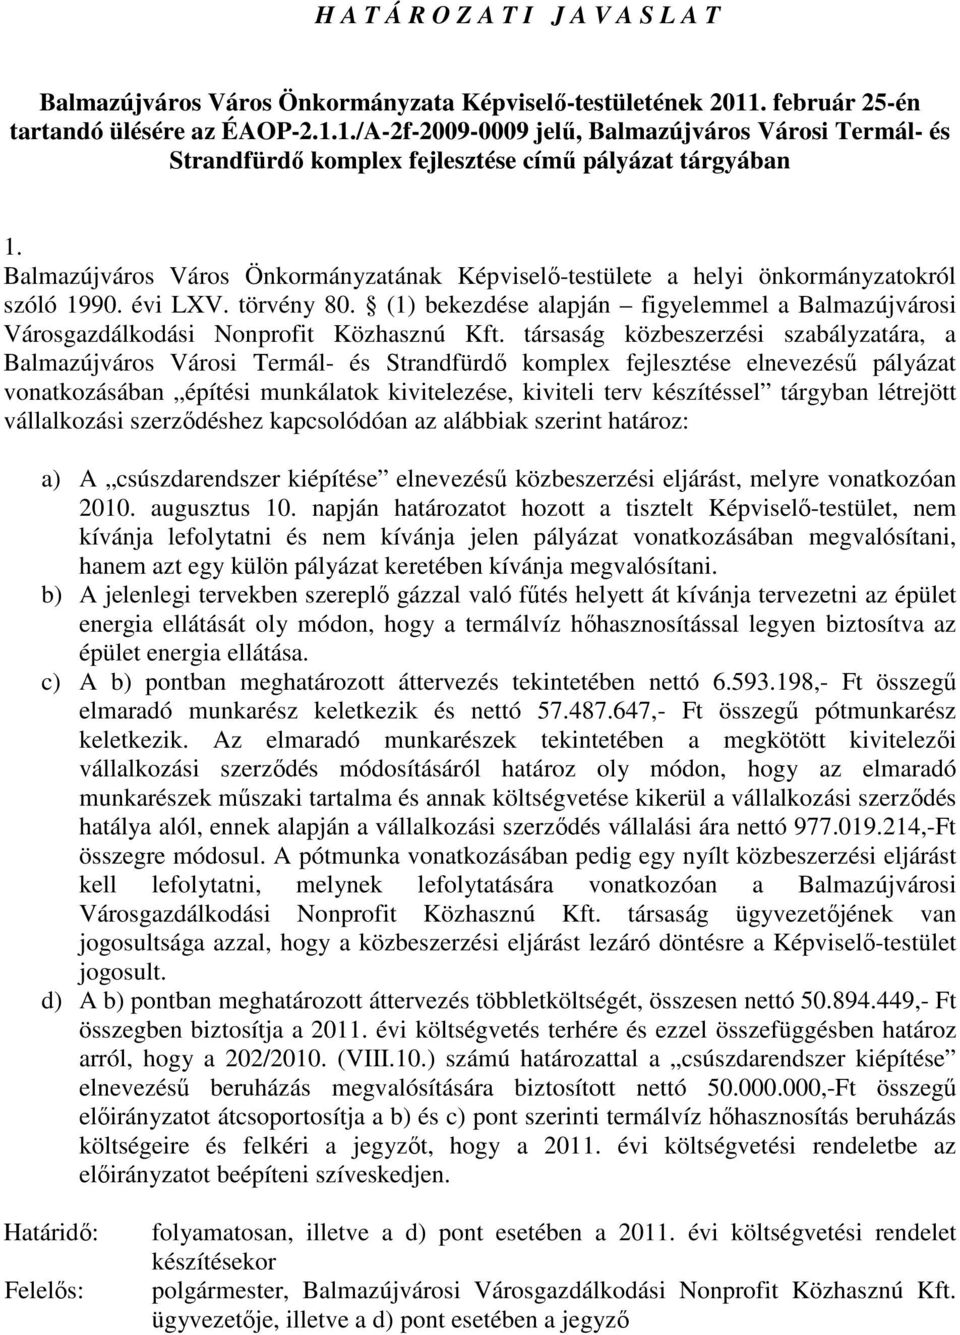 Balmazújváros Város Önkormányzatának Képviselı-testülete a helyi önkormányzatokról szóló 1990. évi LXV. törvény 80.